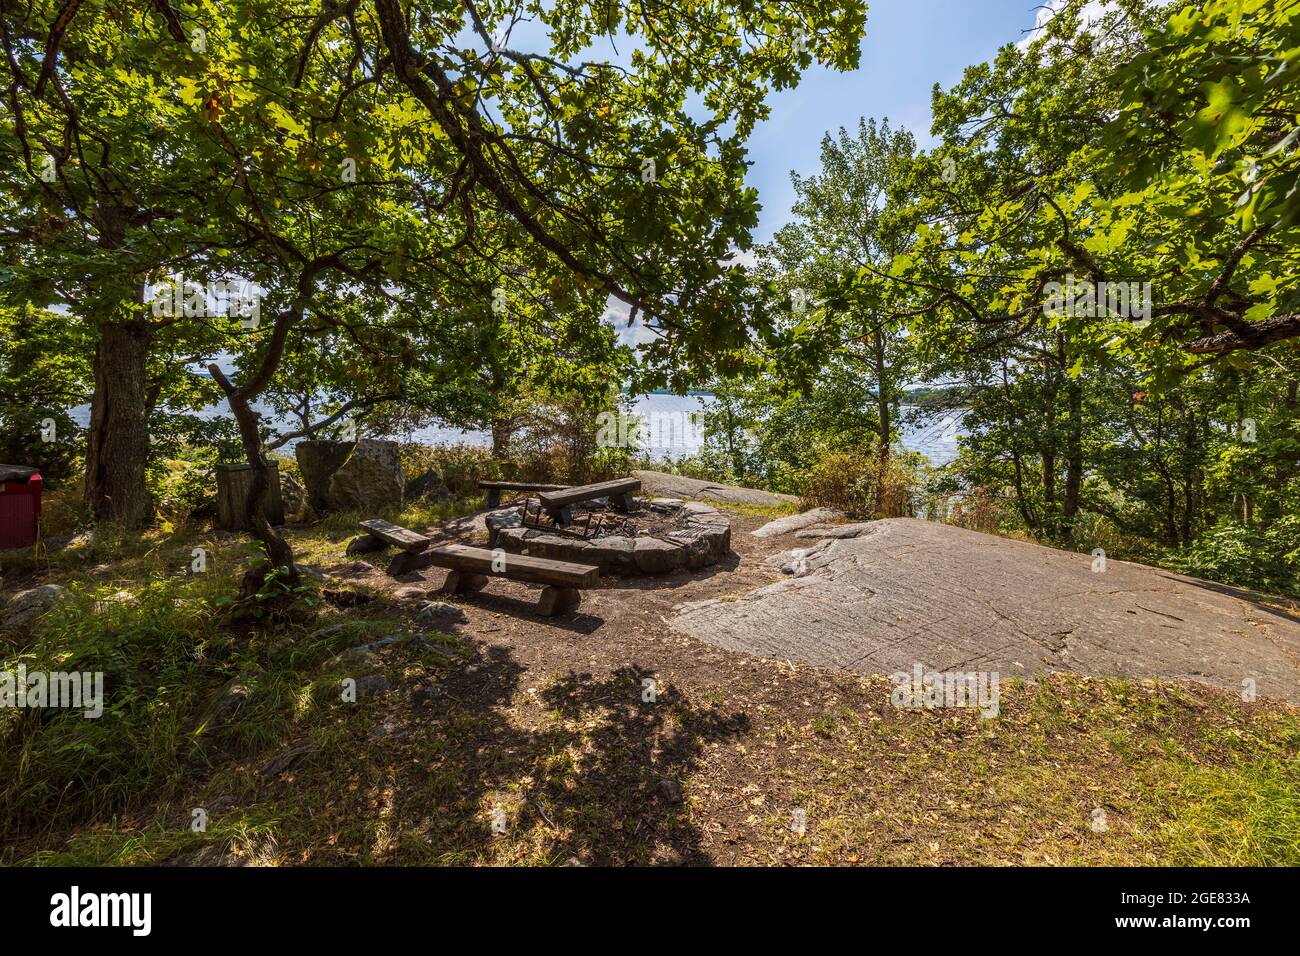 Wunderschöne Aussicht auf den Grillplatz im Freien auf grünen Bäumen im Hintergrund. Schweden. Stockfoto